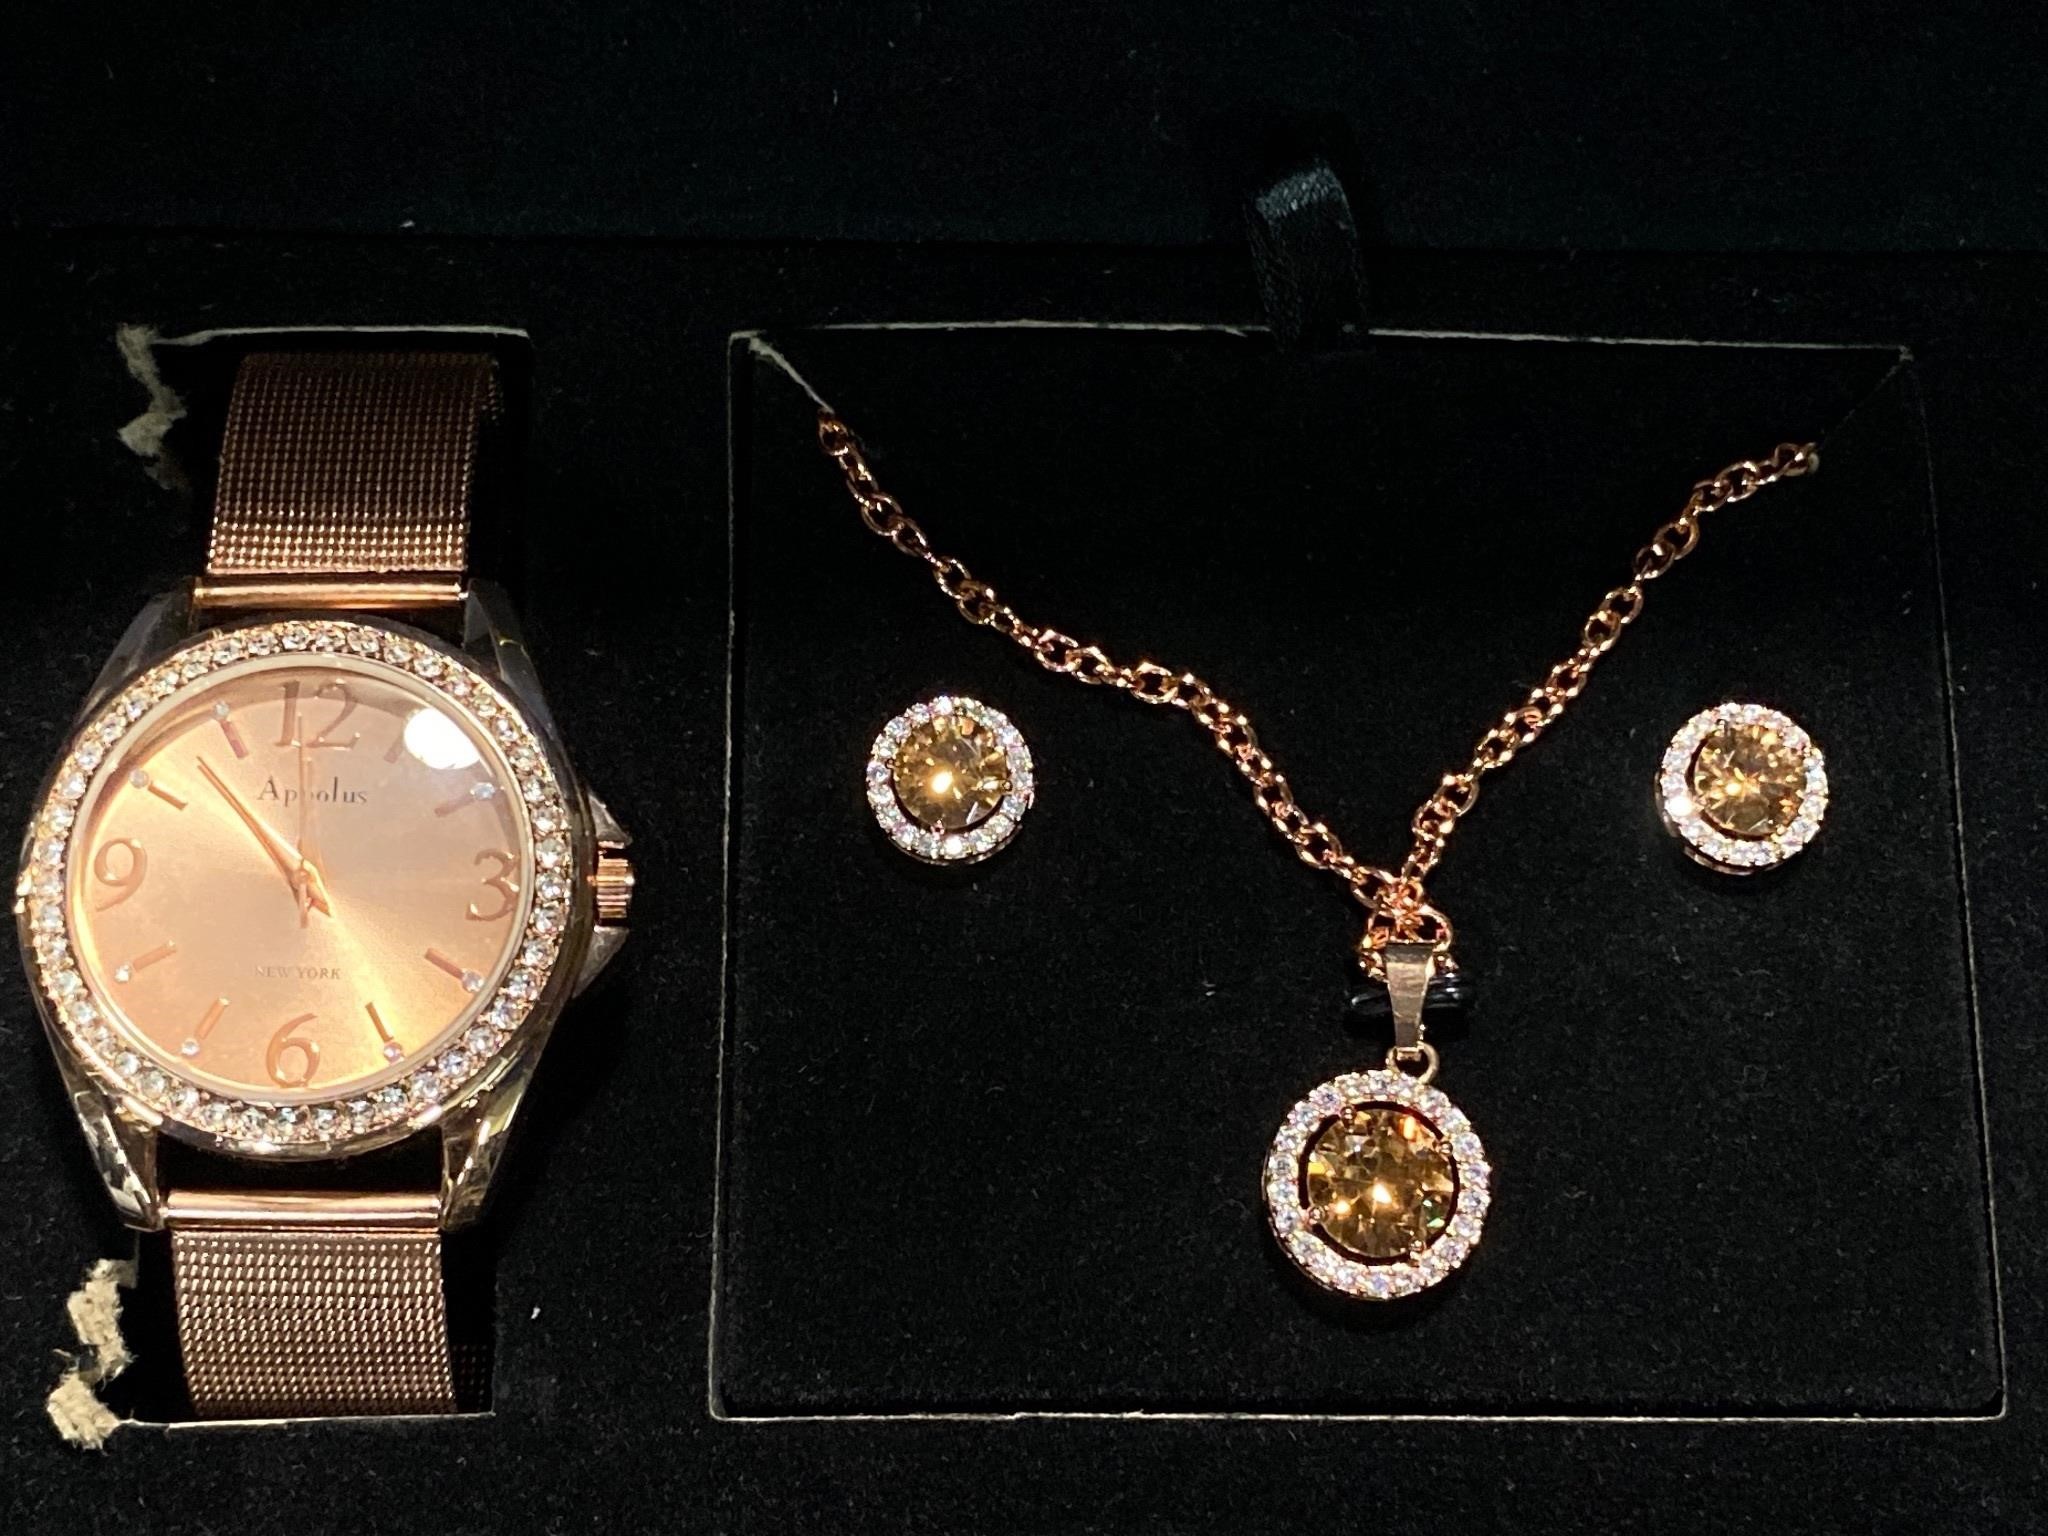 NEW Appolus Watch and Jewelry Set